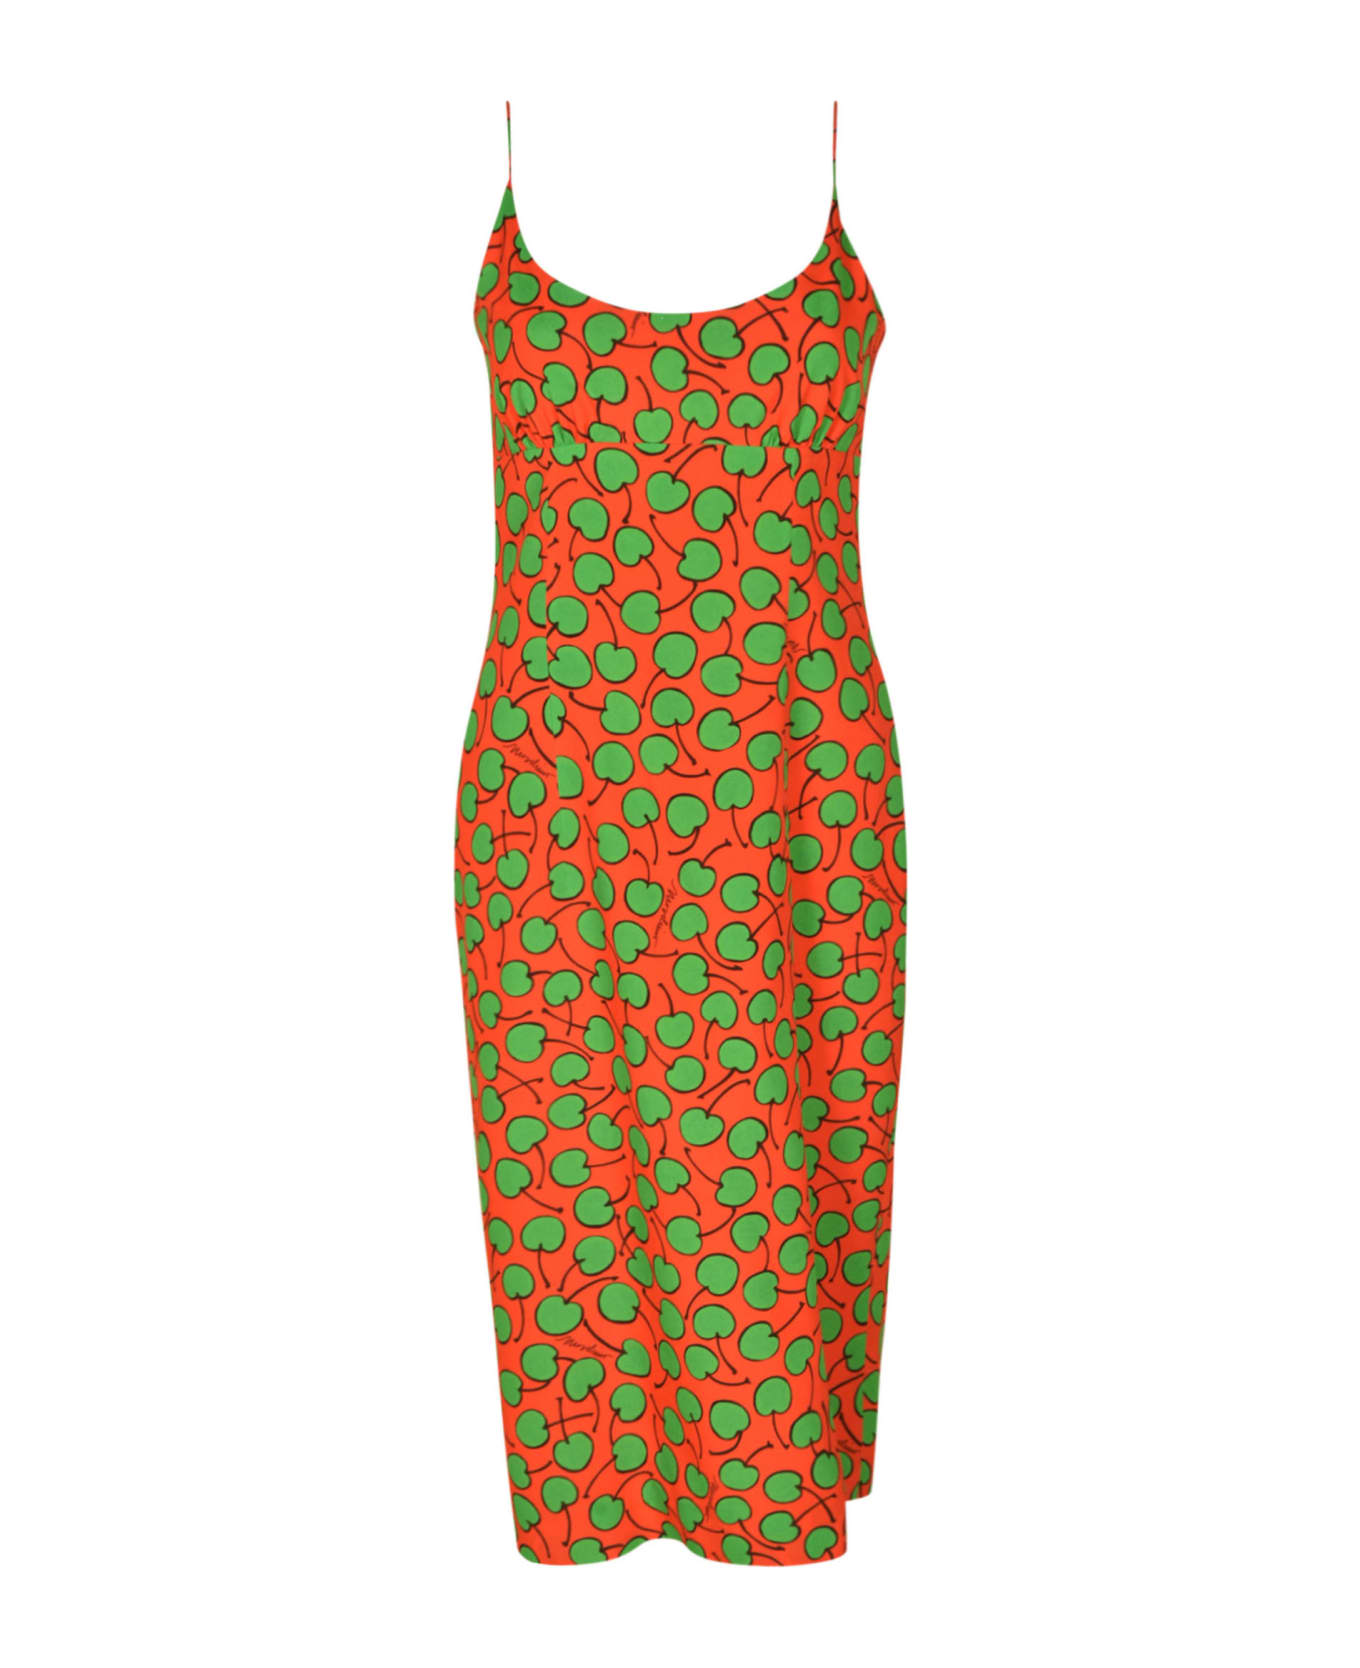 Moschino Cherry Monogram Print Dress - RED/GREEN